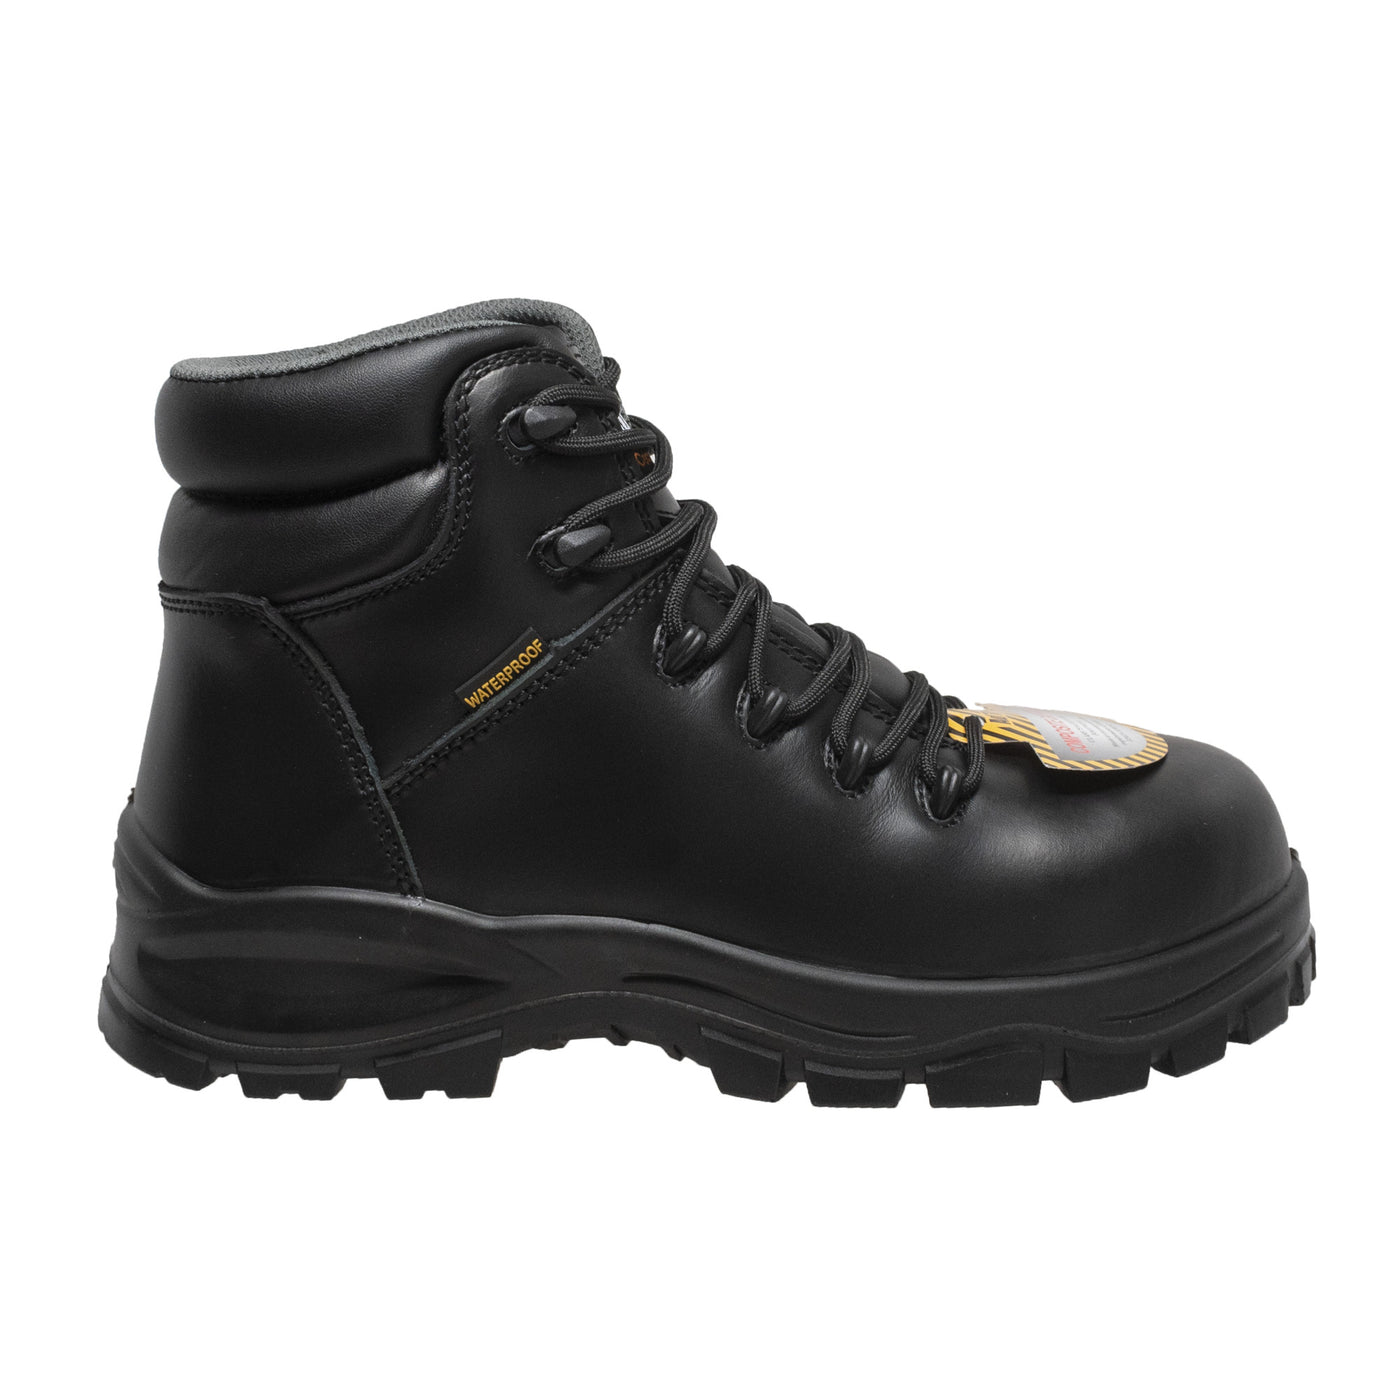 Women's 6" Black Waterproof Cap Toe Work Boot - 8903-BK - Shop Genuine Leather men & women's boots online | AdTecFootWear